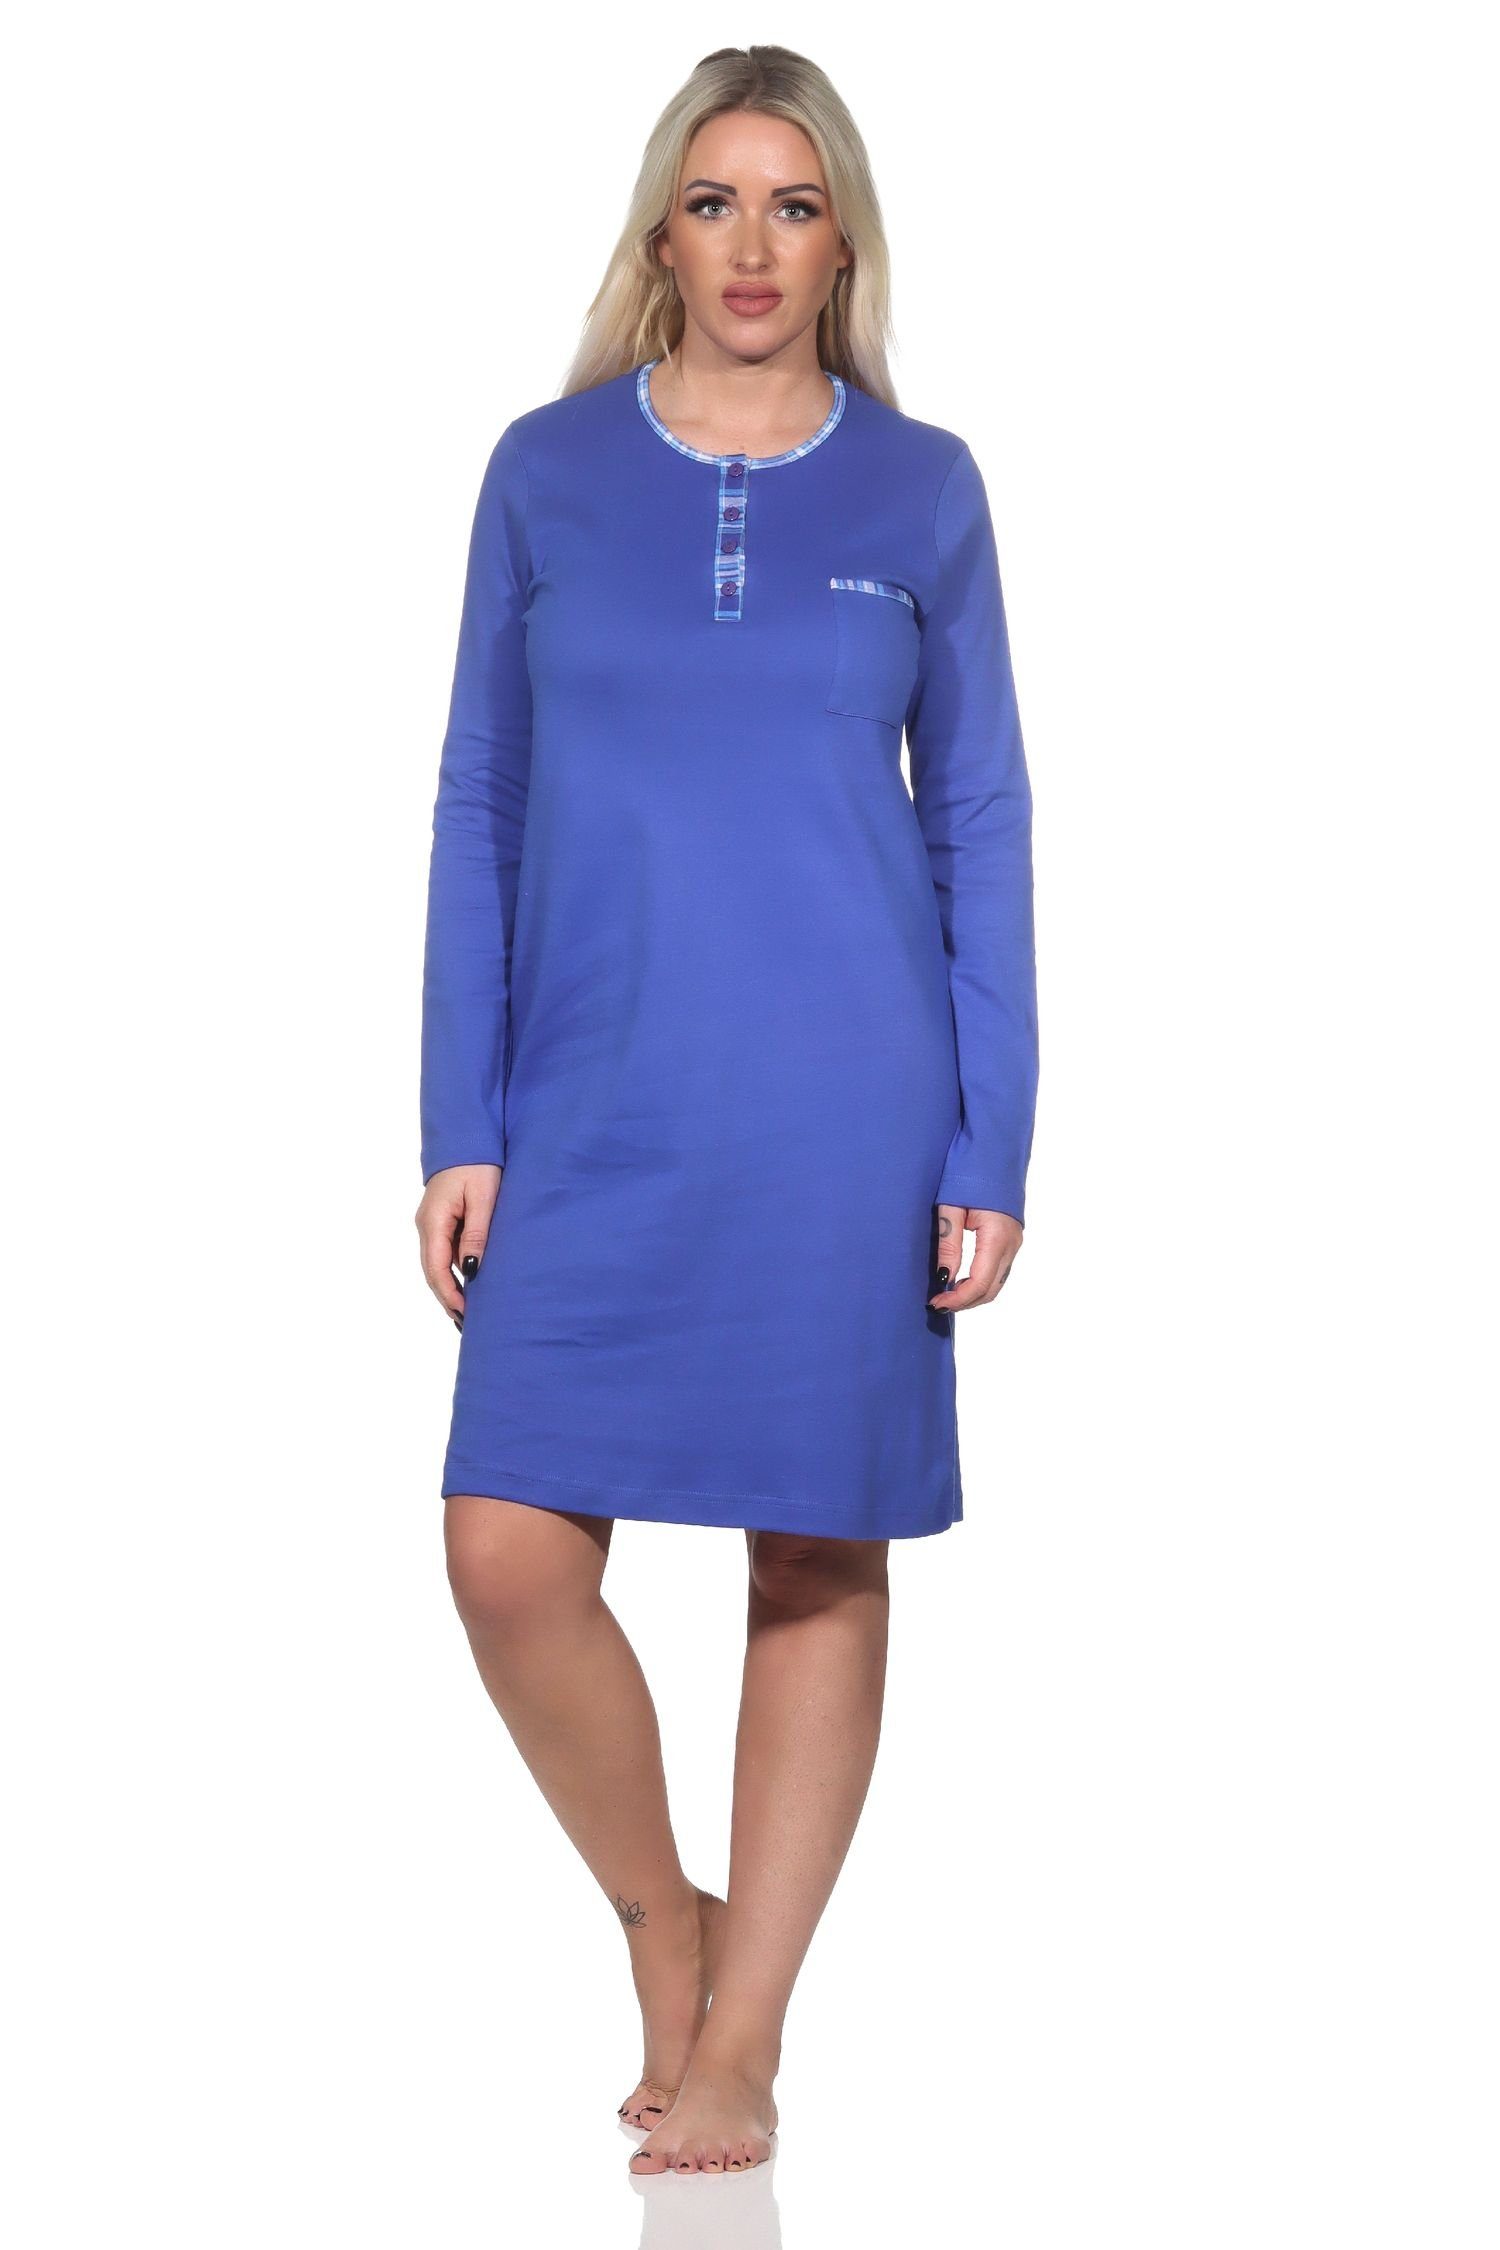 Normann Nachthemd Normann Damen langarm Nachthemd in Kuschel Interlock Qualität blau